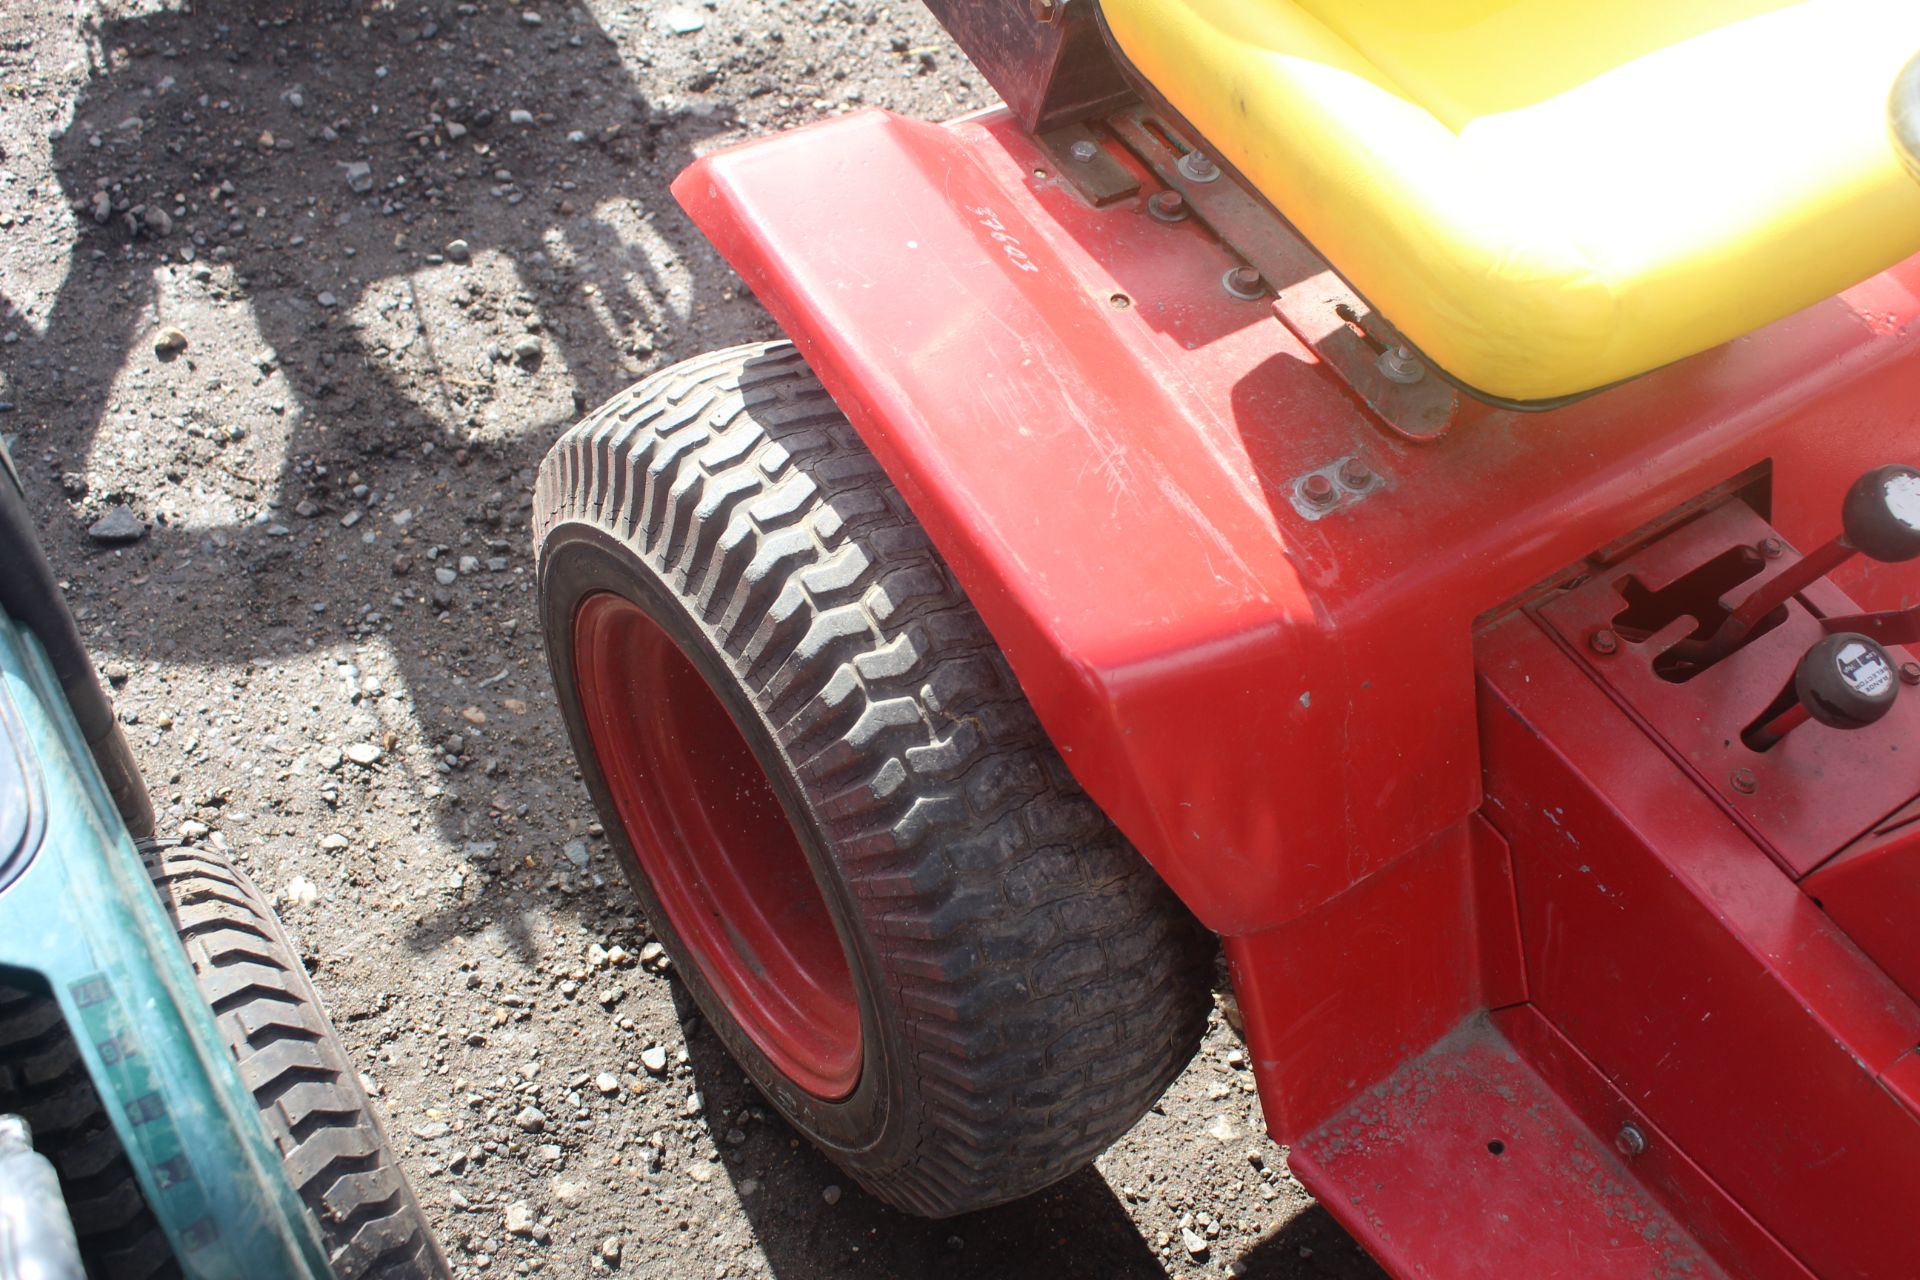 Wheel Horse garden tractor. Key held - Image 10 of 18